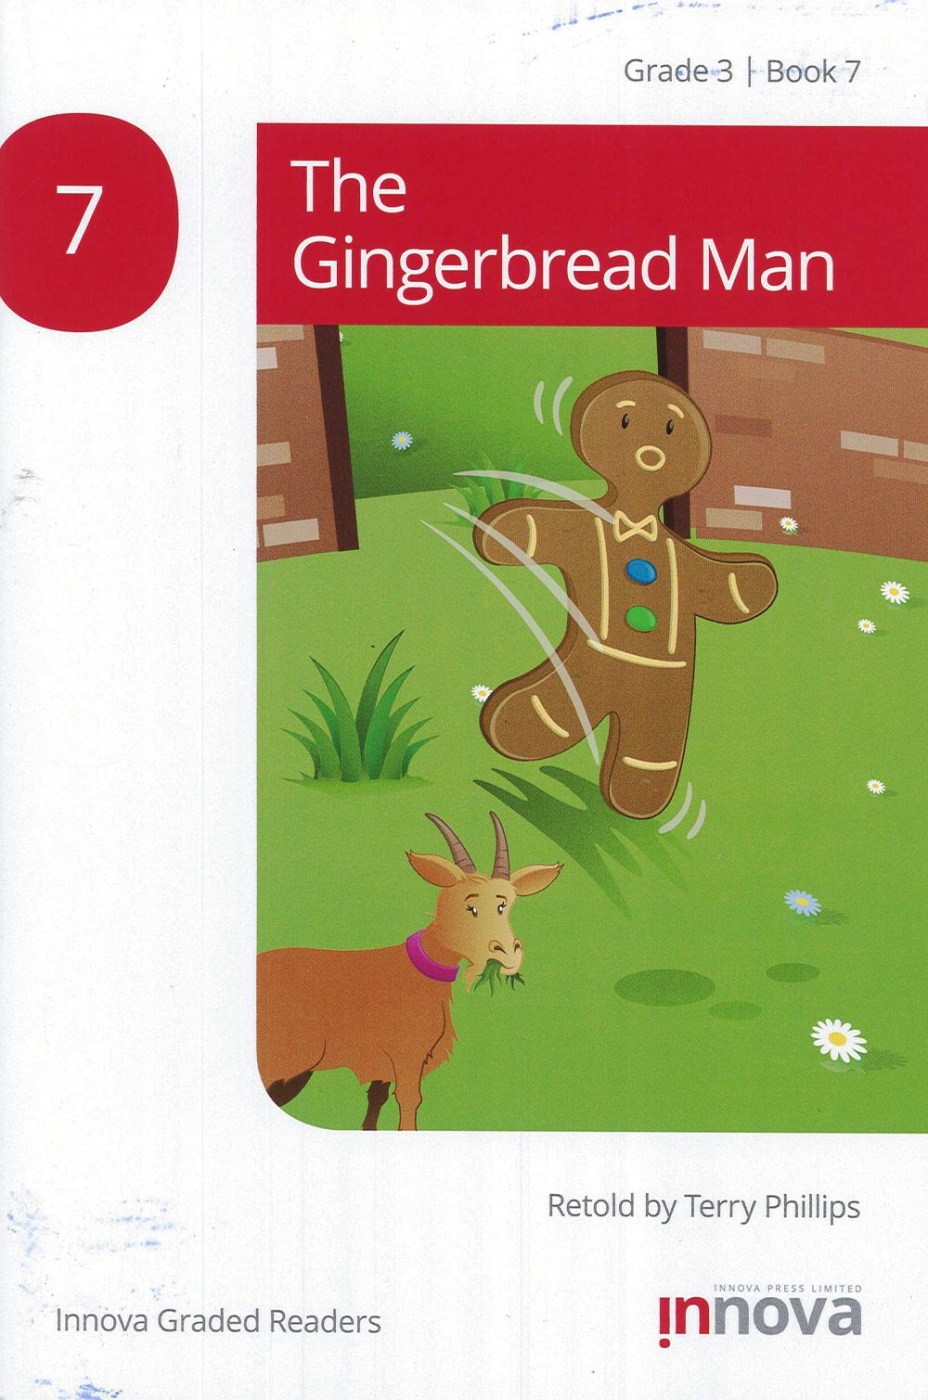 Innova Graded Readers Grade 3 (Book 7): The Gingerbread Man